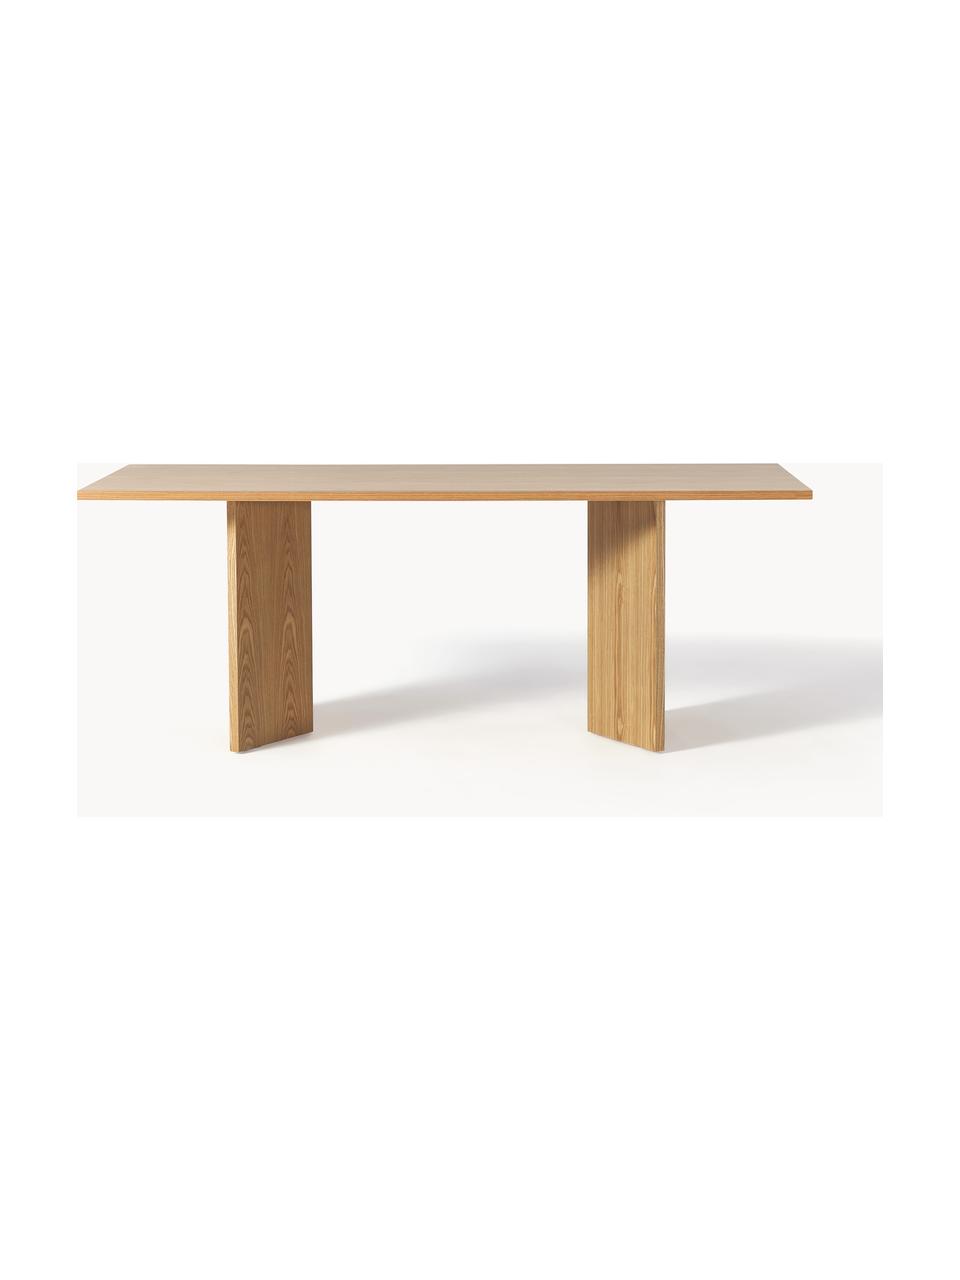 Table en bois Toni, 200 x 90 cm, MDF avec placage en frêne, laqué

Ce produit est fabriqué à partir de bois certifié FSC® issu d'une exploitation durable, Bois de frêne, Ø 200 x haut. 90 cm